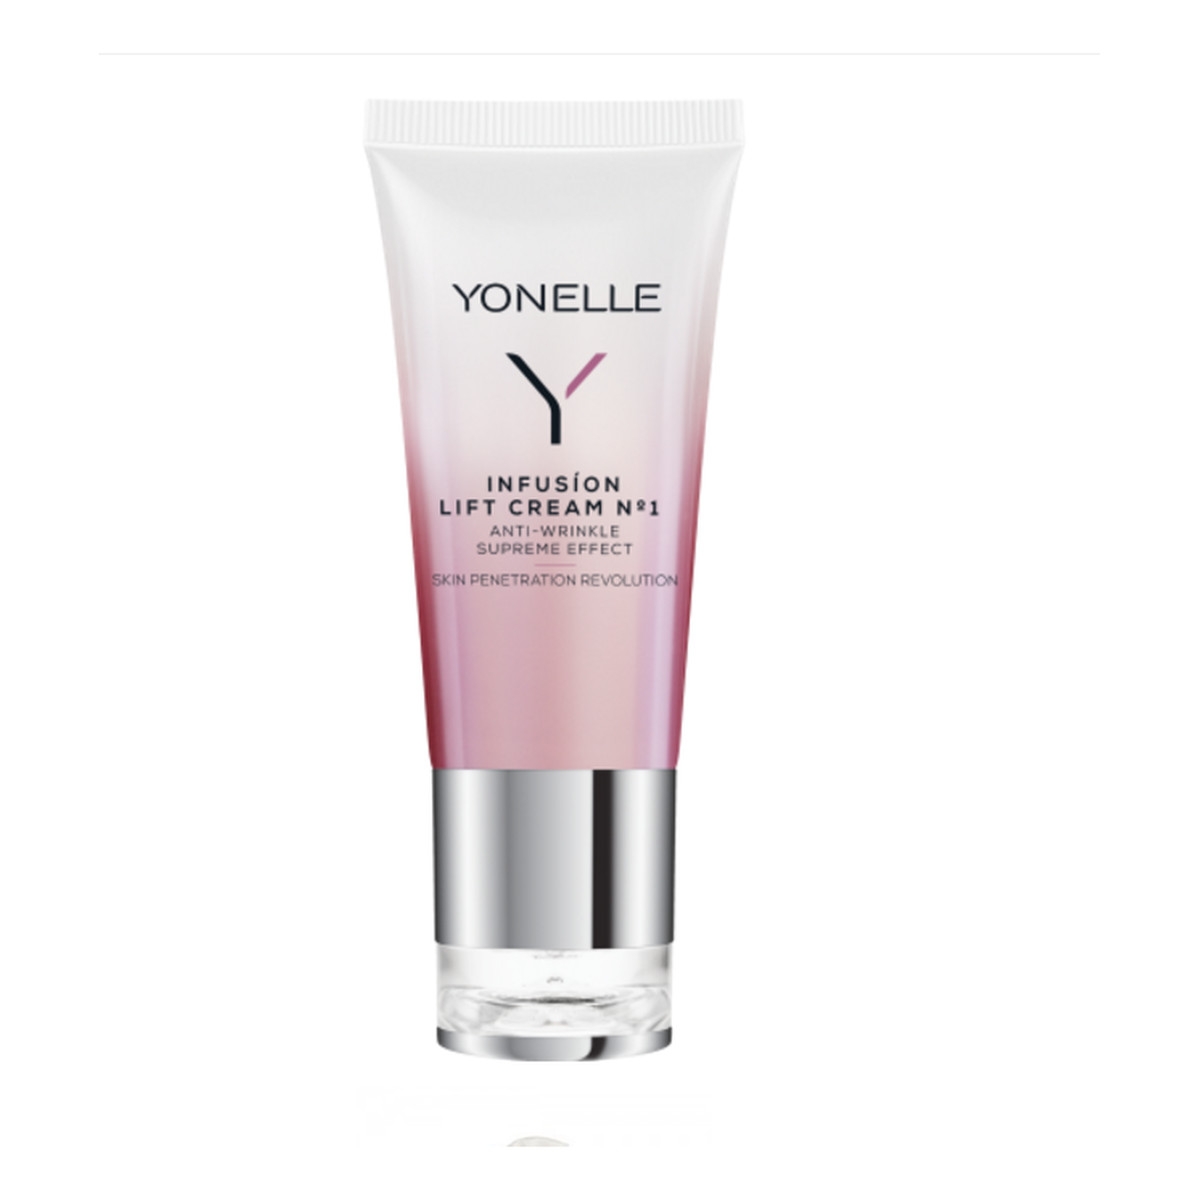 Yonelle Infusion Lift Cream N1 infuzyjny krem liftingujący do skóry dojrzałej 30ml